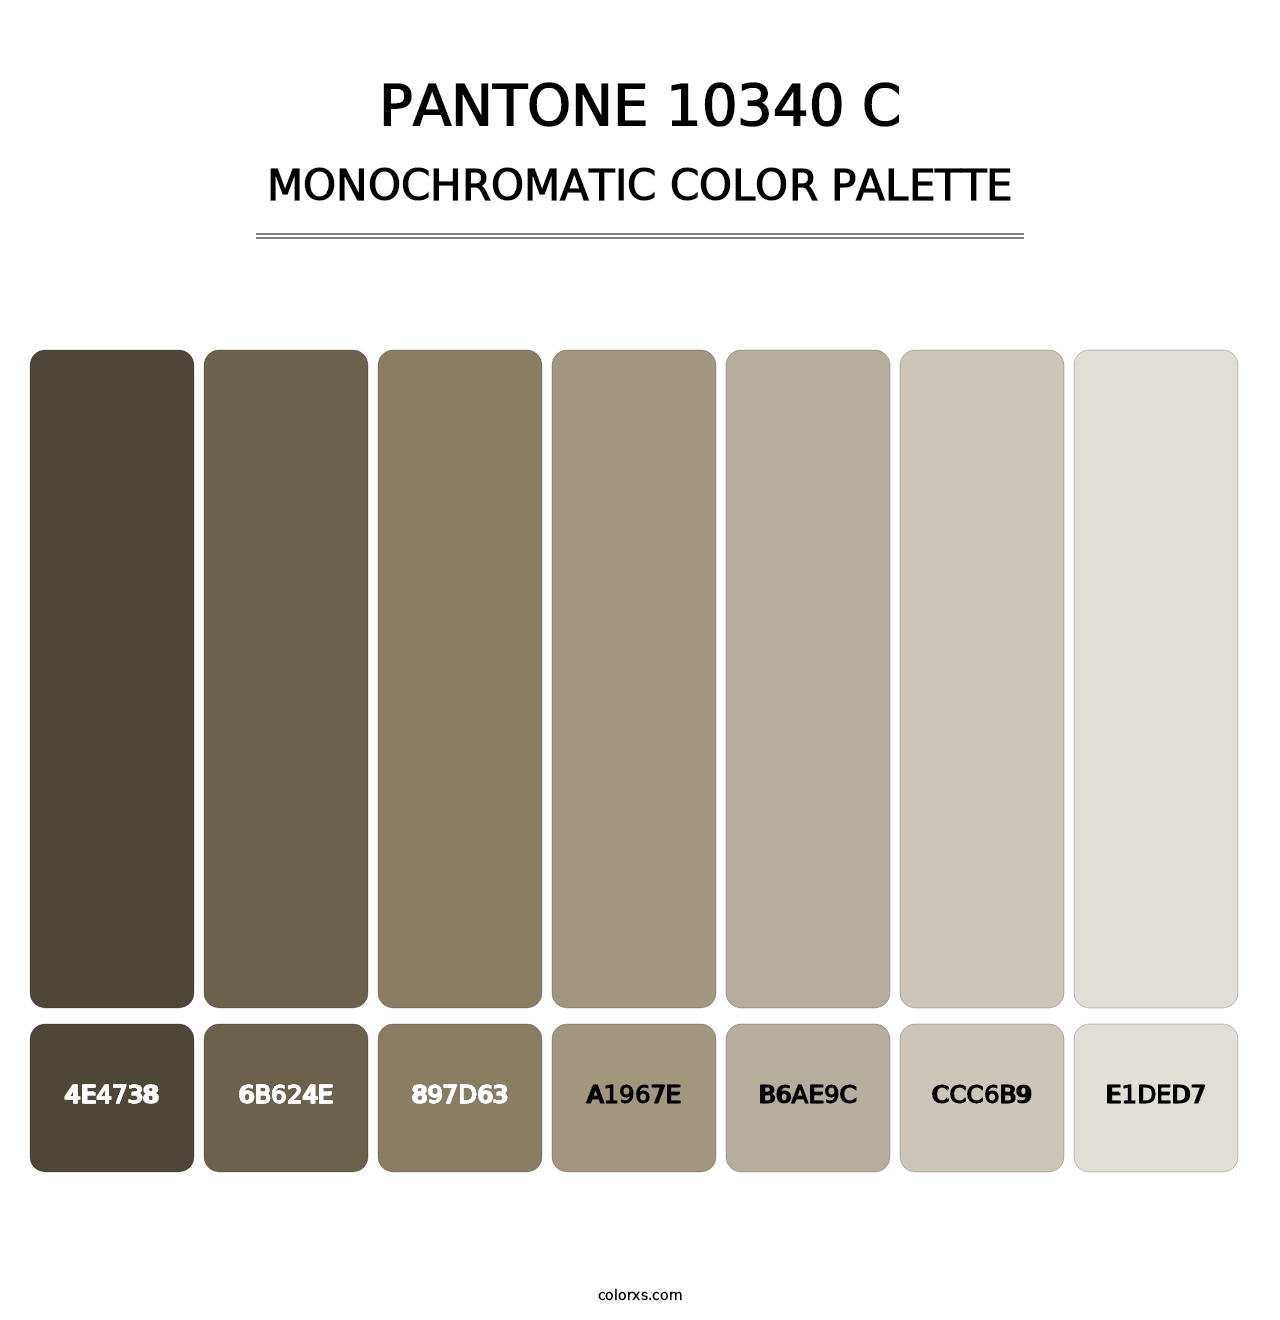 PANTONE 10340 C - Monochromatic Color Palette